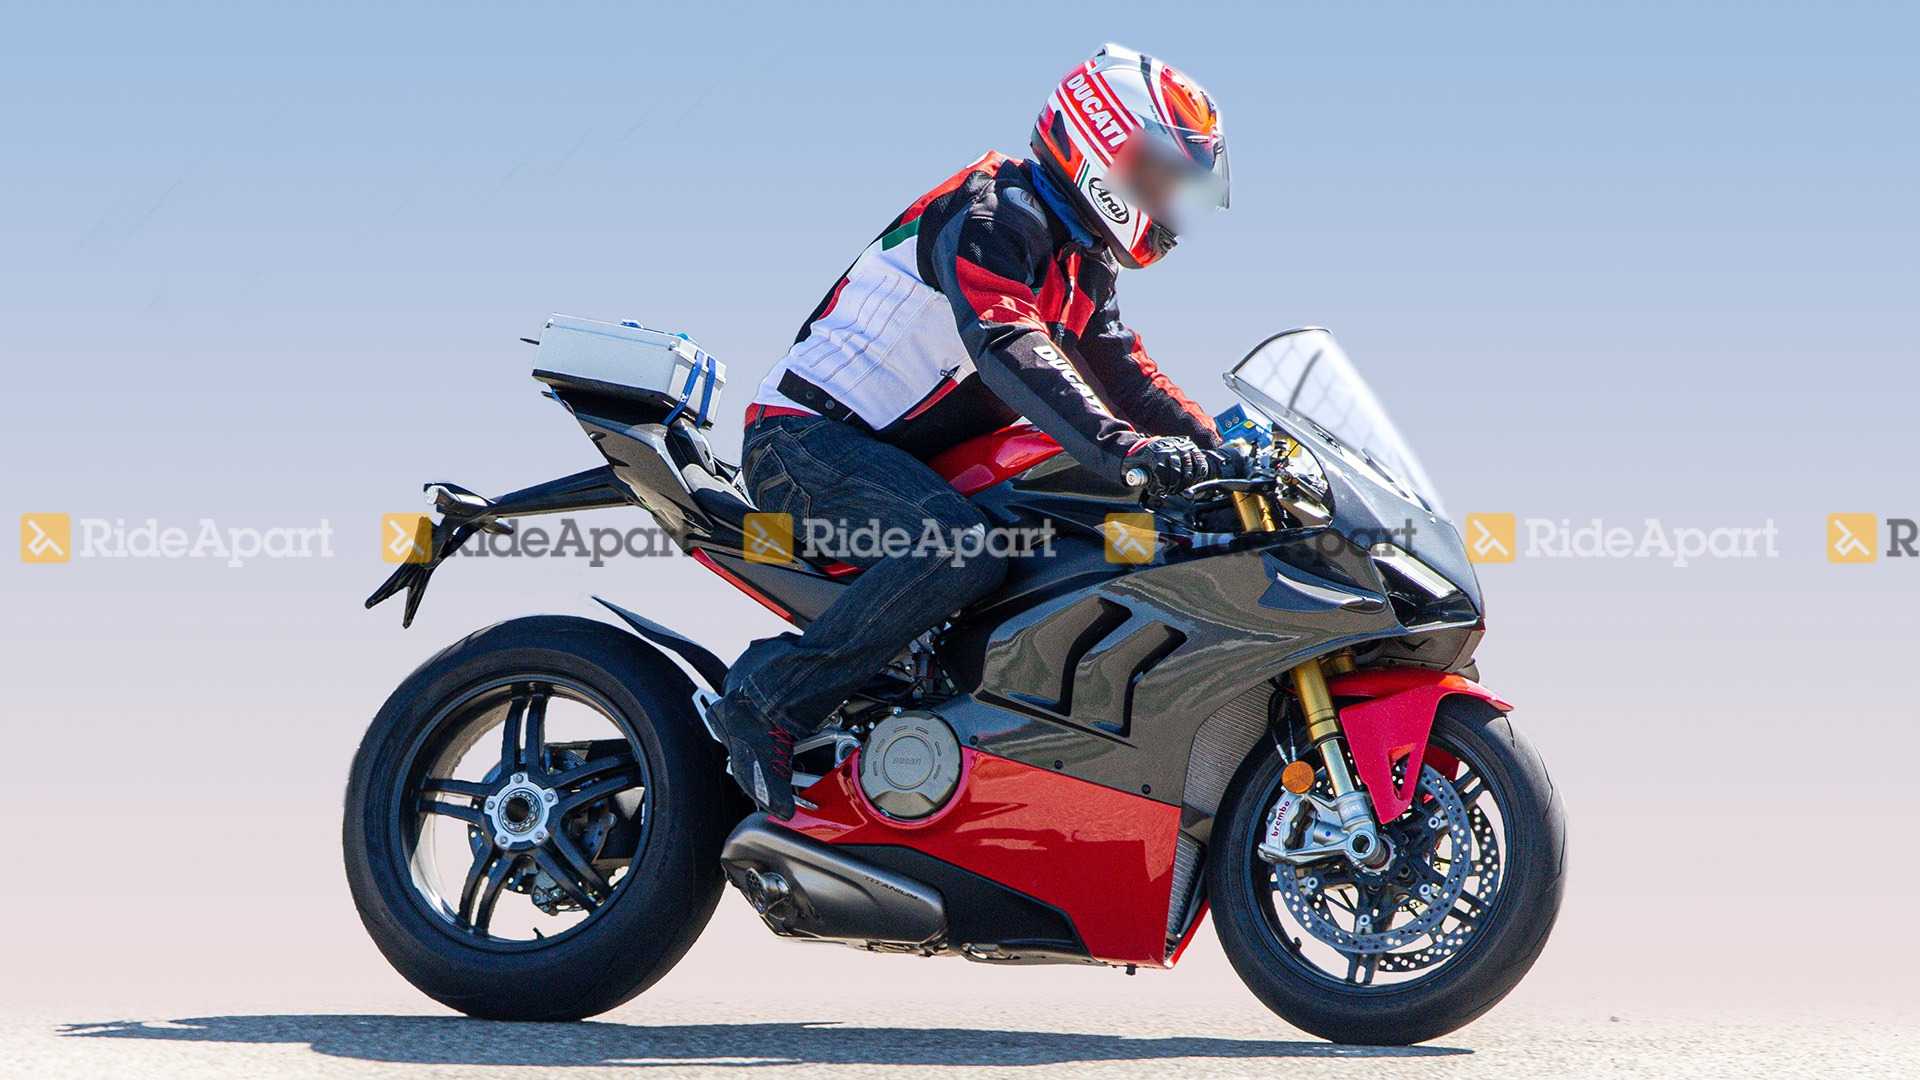 Ducati Panigale V4 Superleggera: Everything We Know